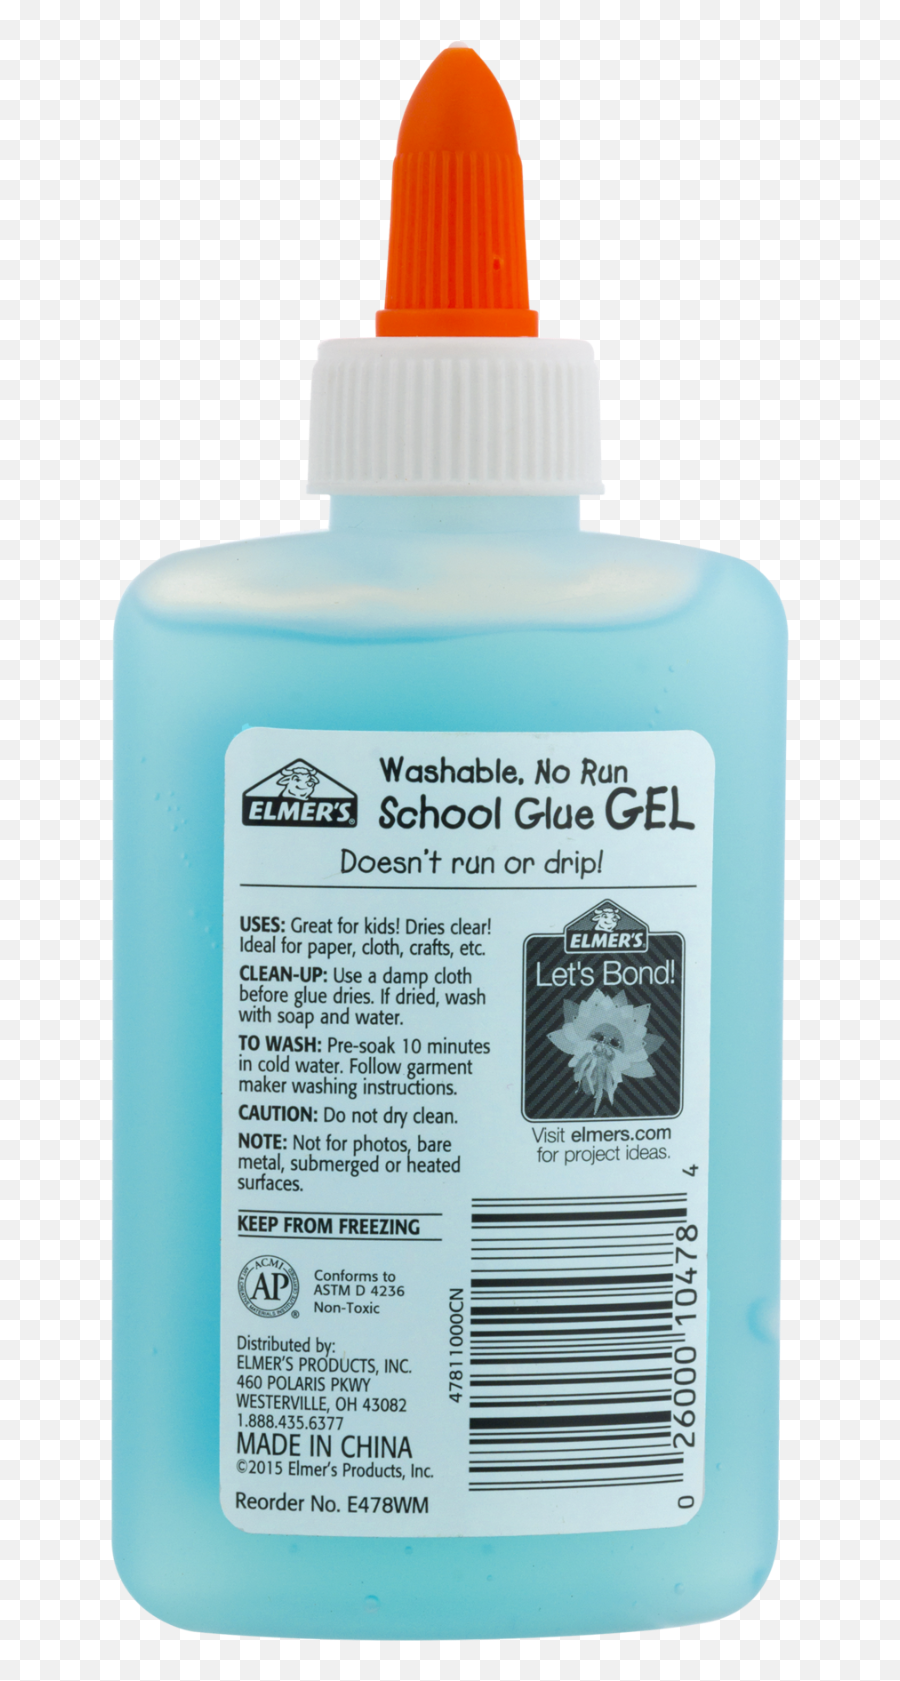 Elmers School Glue Gel 4 Oz For Sale - Household Supply Emoji,Elmer's Glue Logo